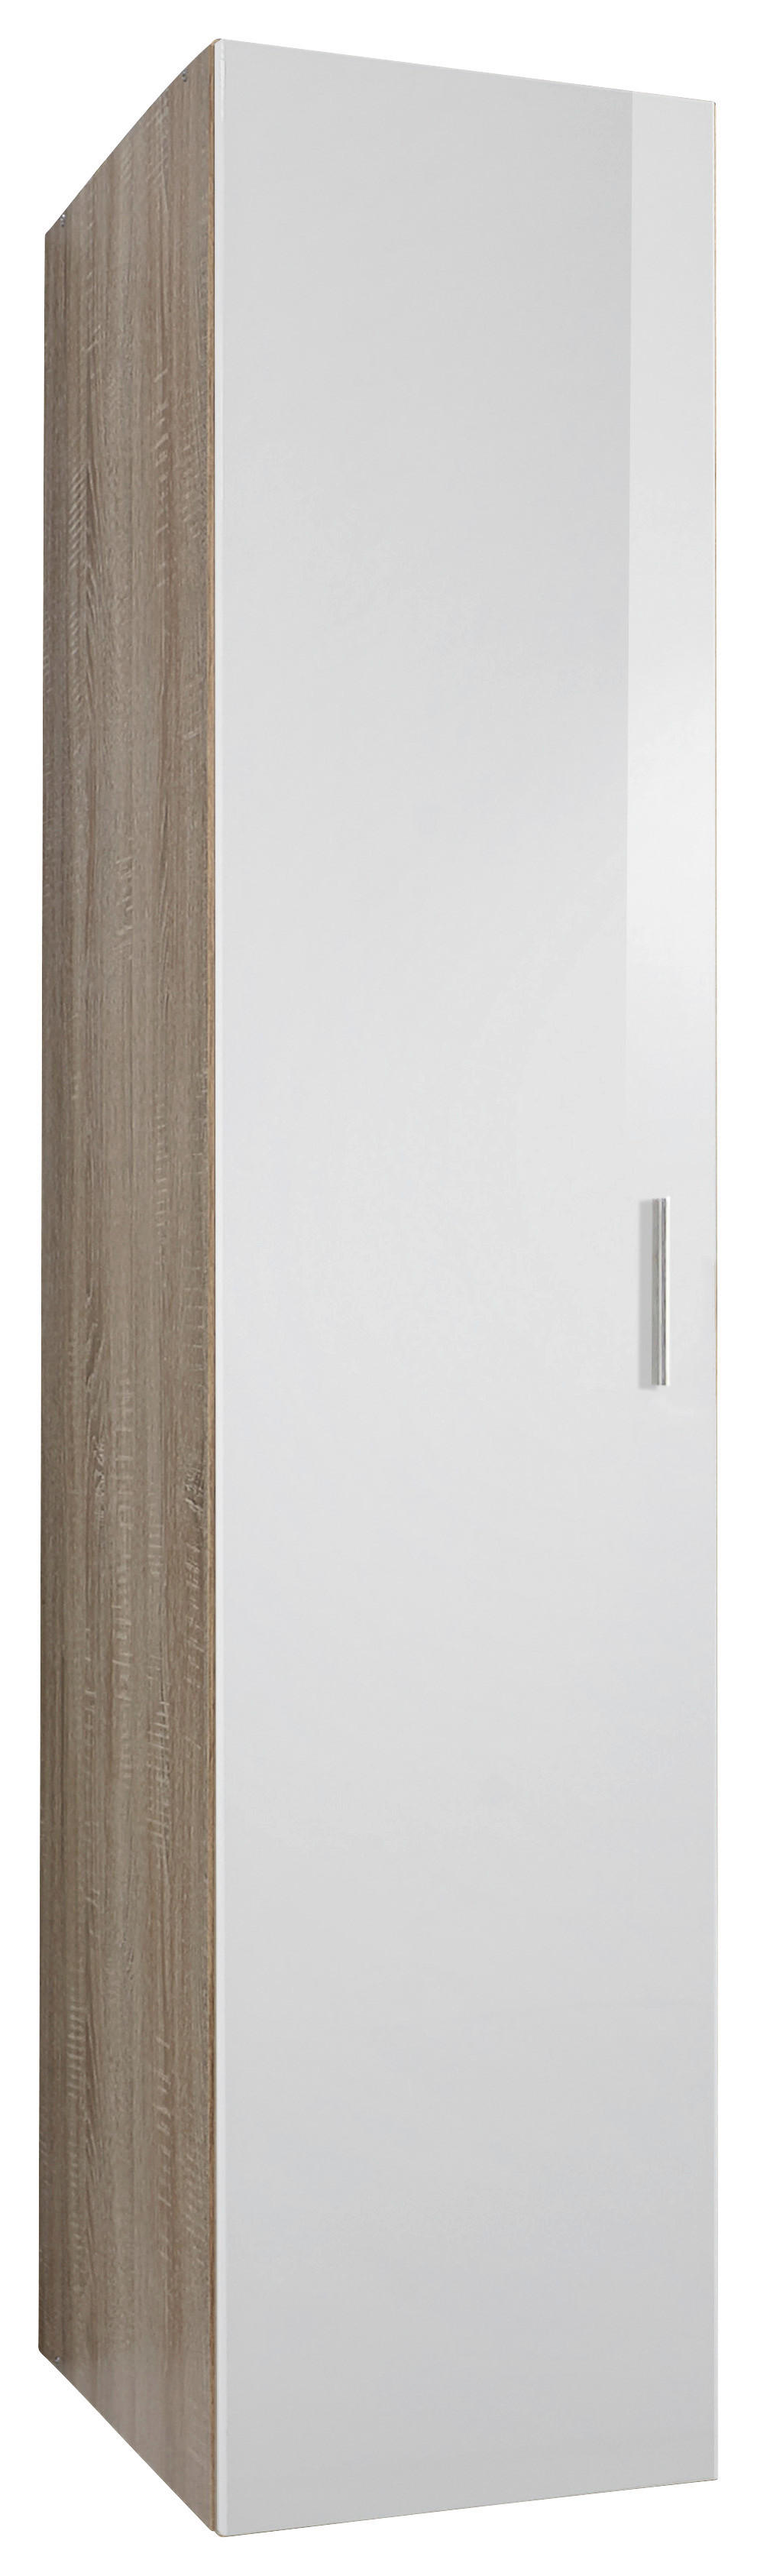 Xora SKŘÍŇ NA ODĚV, bílá, barvy dubu, 40/185/54 cm - bílá,barvy dubu - kompozitní dřevo